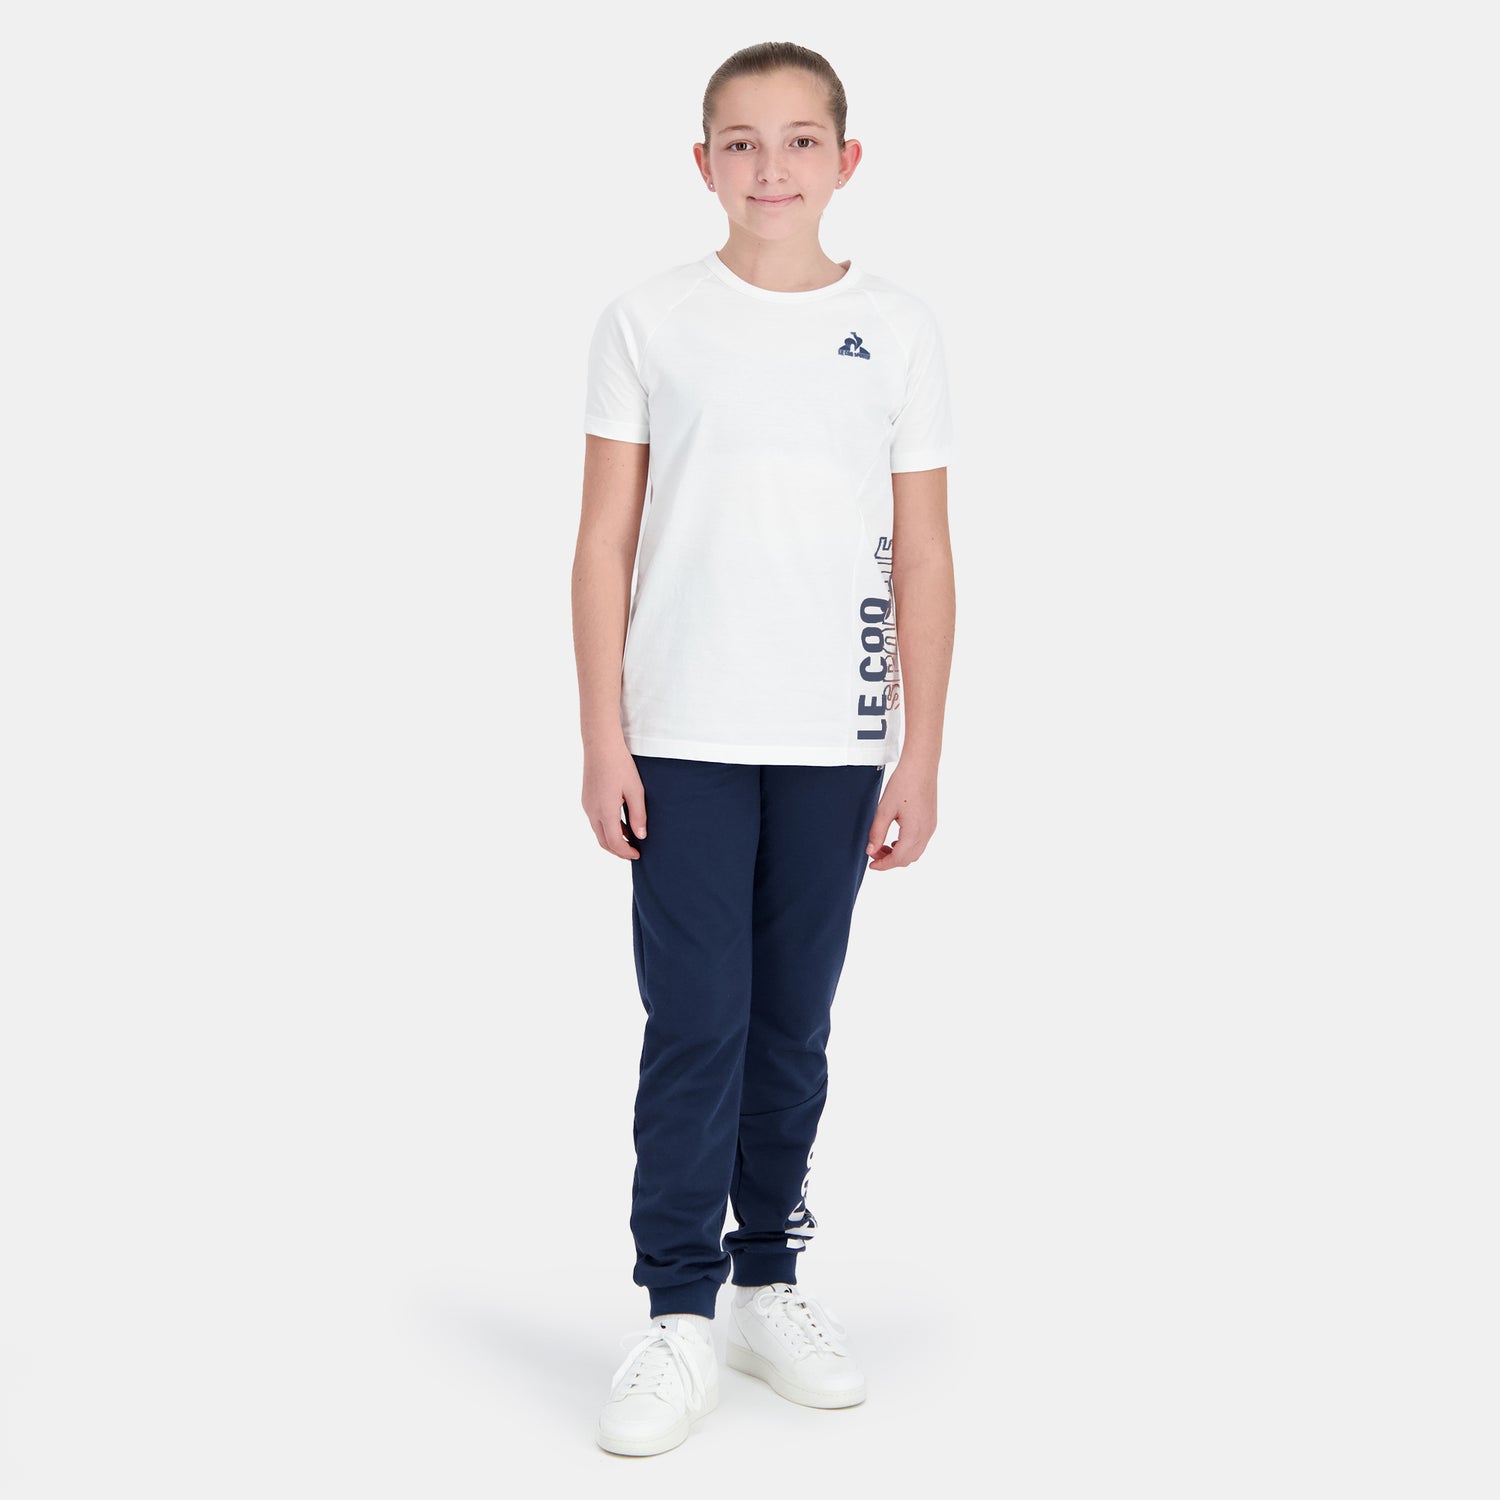 2410126-SAISON 2 Tee SS N°1 Enfant new optical w  | Camiseta para Niño